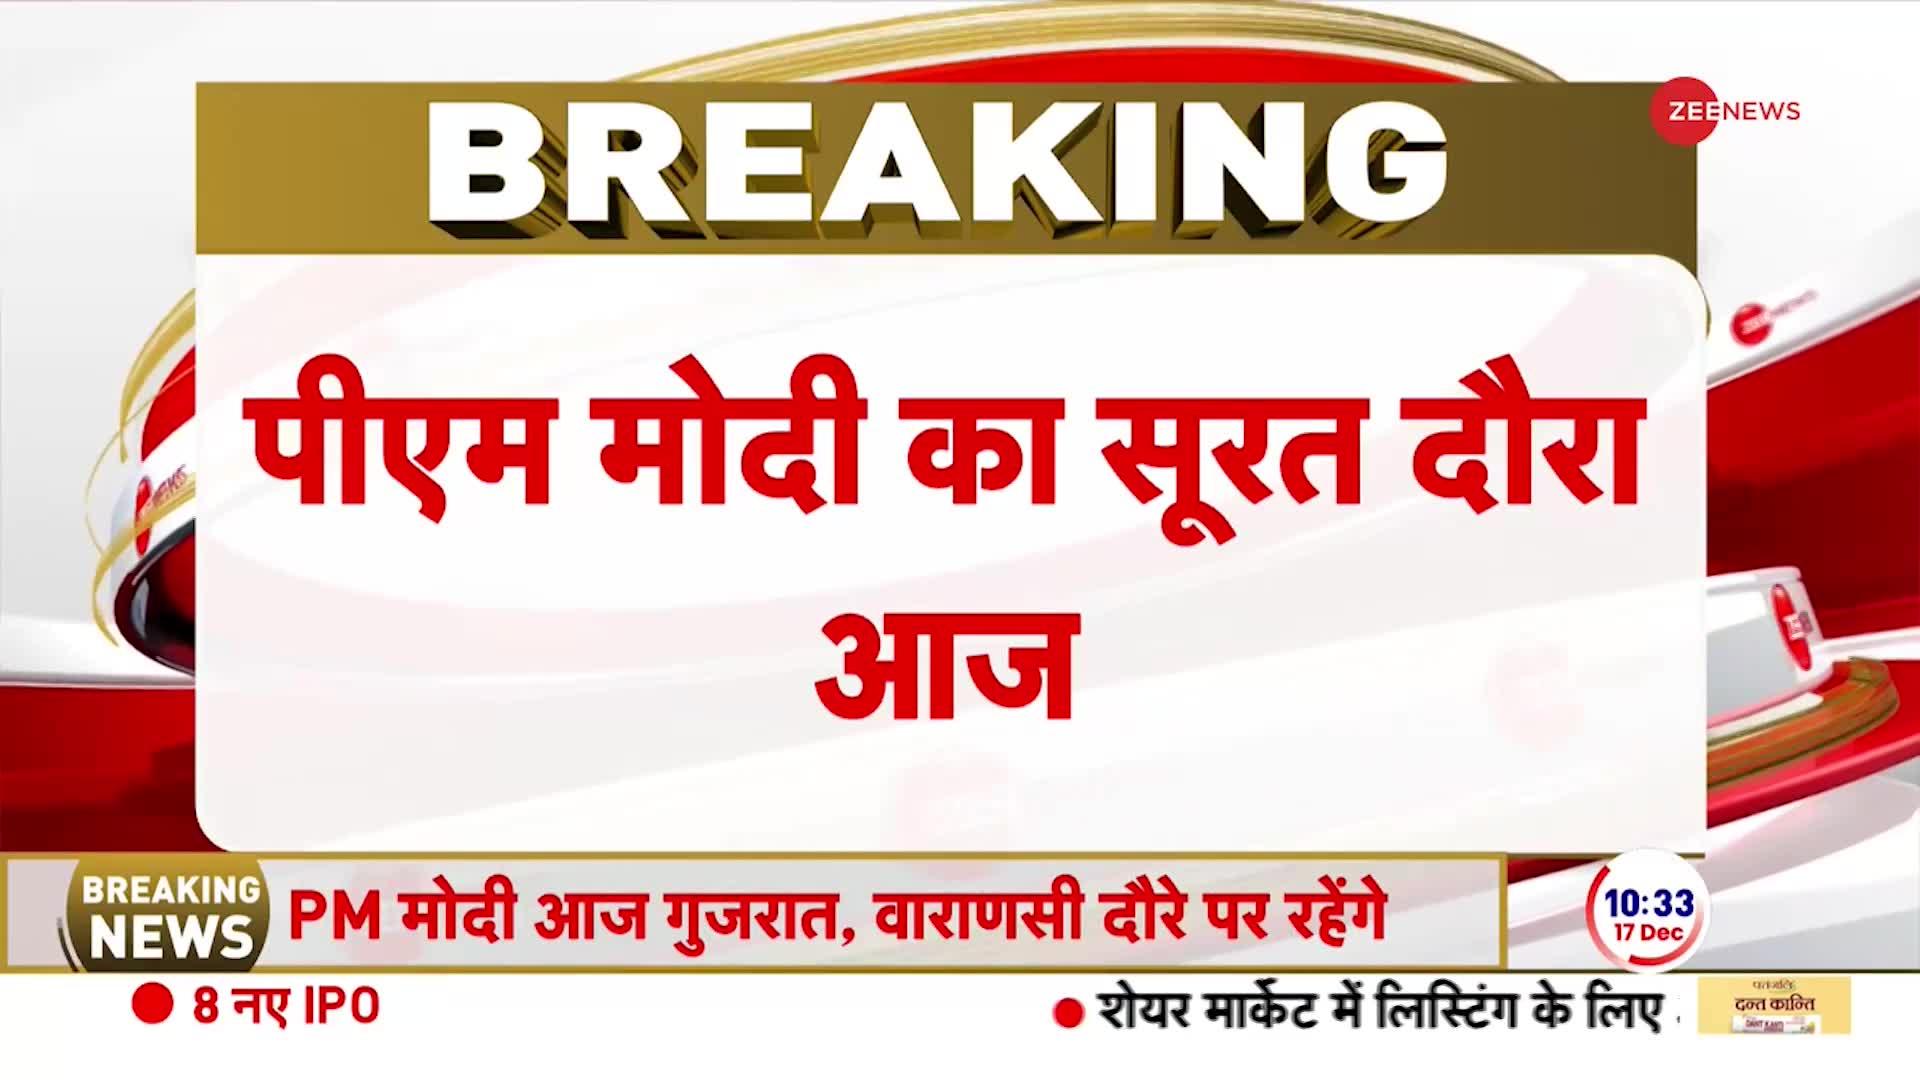 PM Modi Varanasi Visit: दो दिवसीय वाराणसी के दौरे पर जाएंगे प्रधानमंत्री मोदी